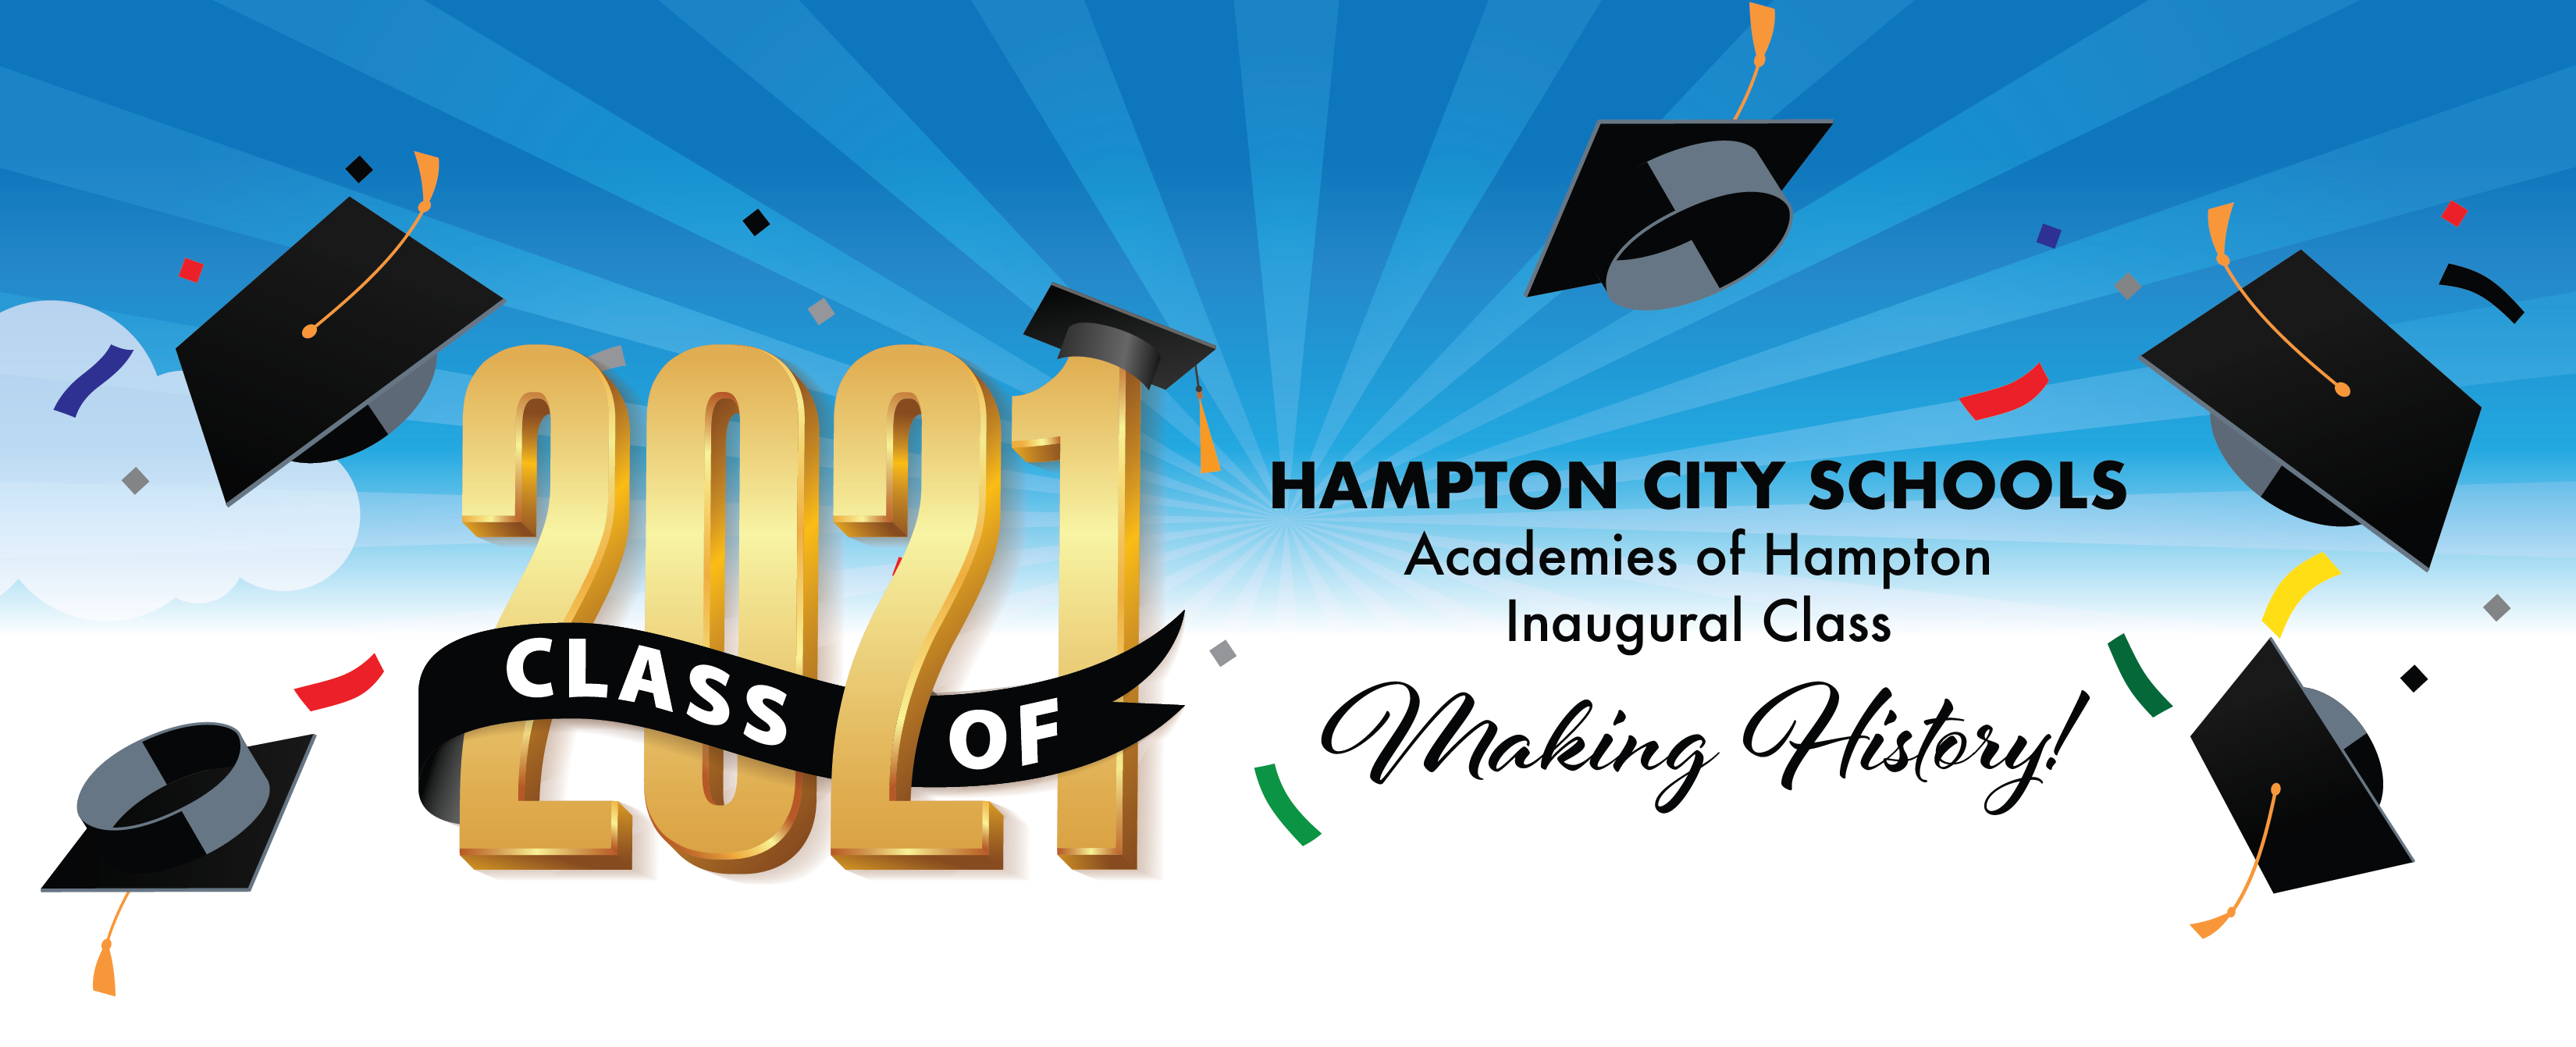 Hampton City Schools